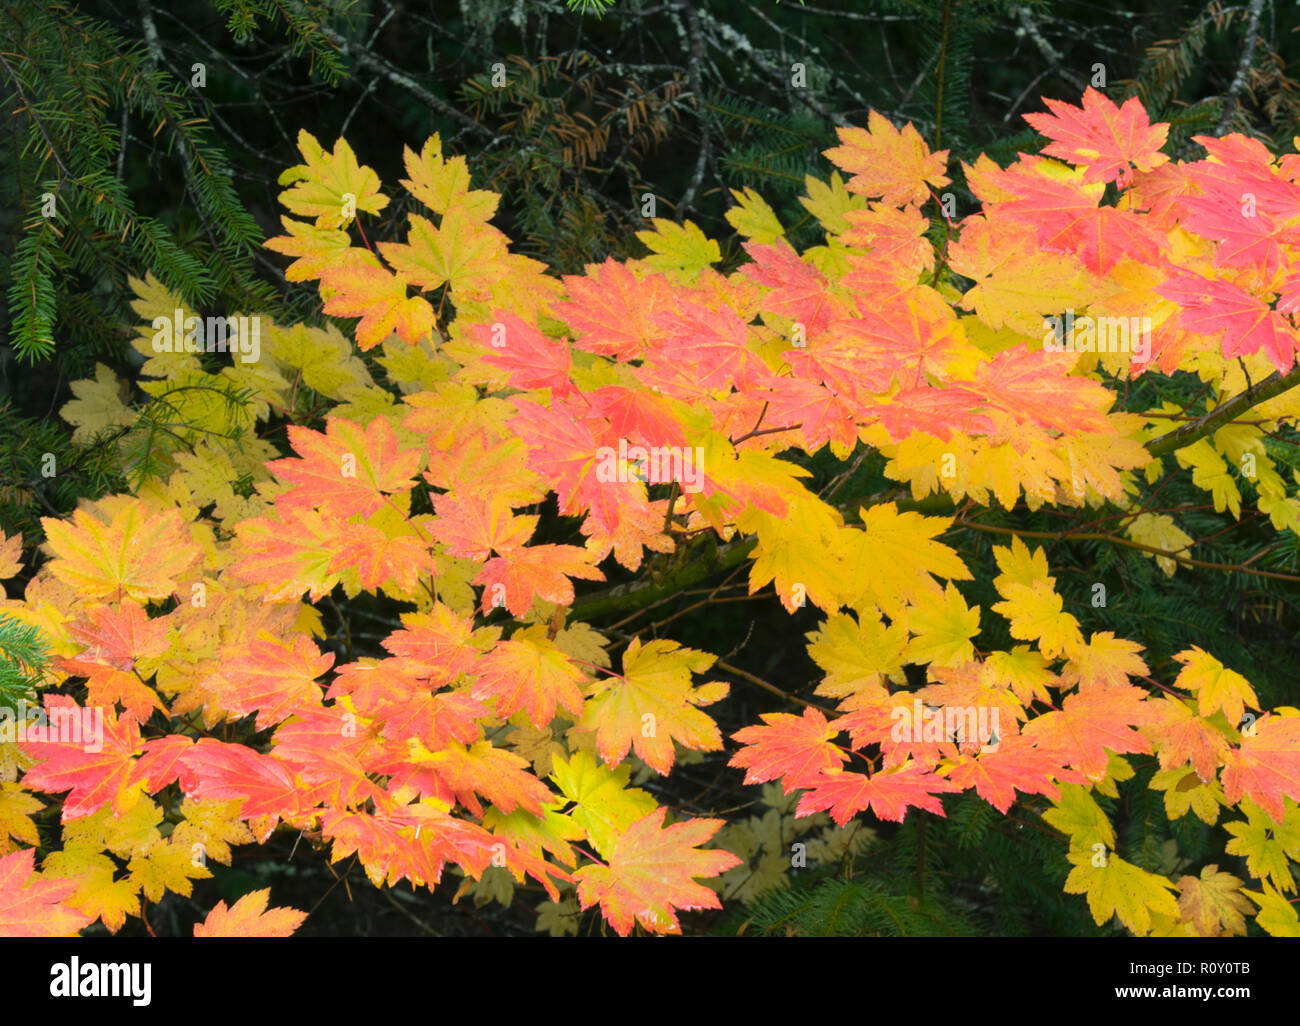 Vine érable (Acer circinatum) à l'automne, Cascades nord, octobre Banque D'Images